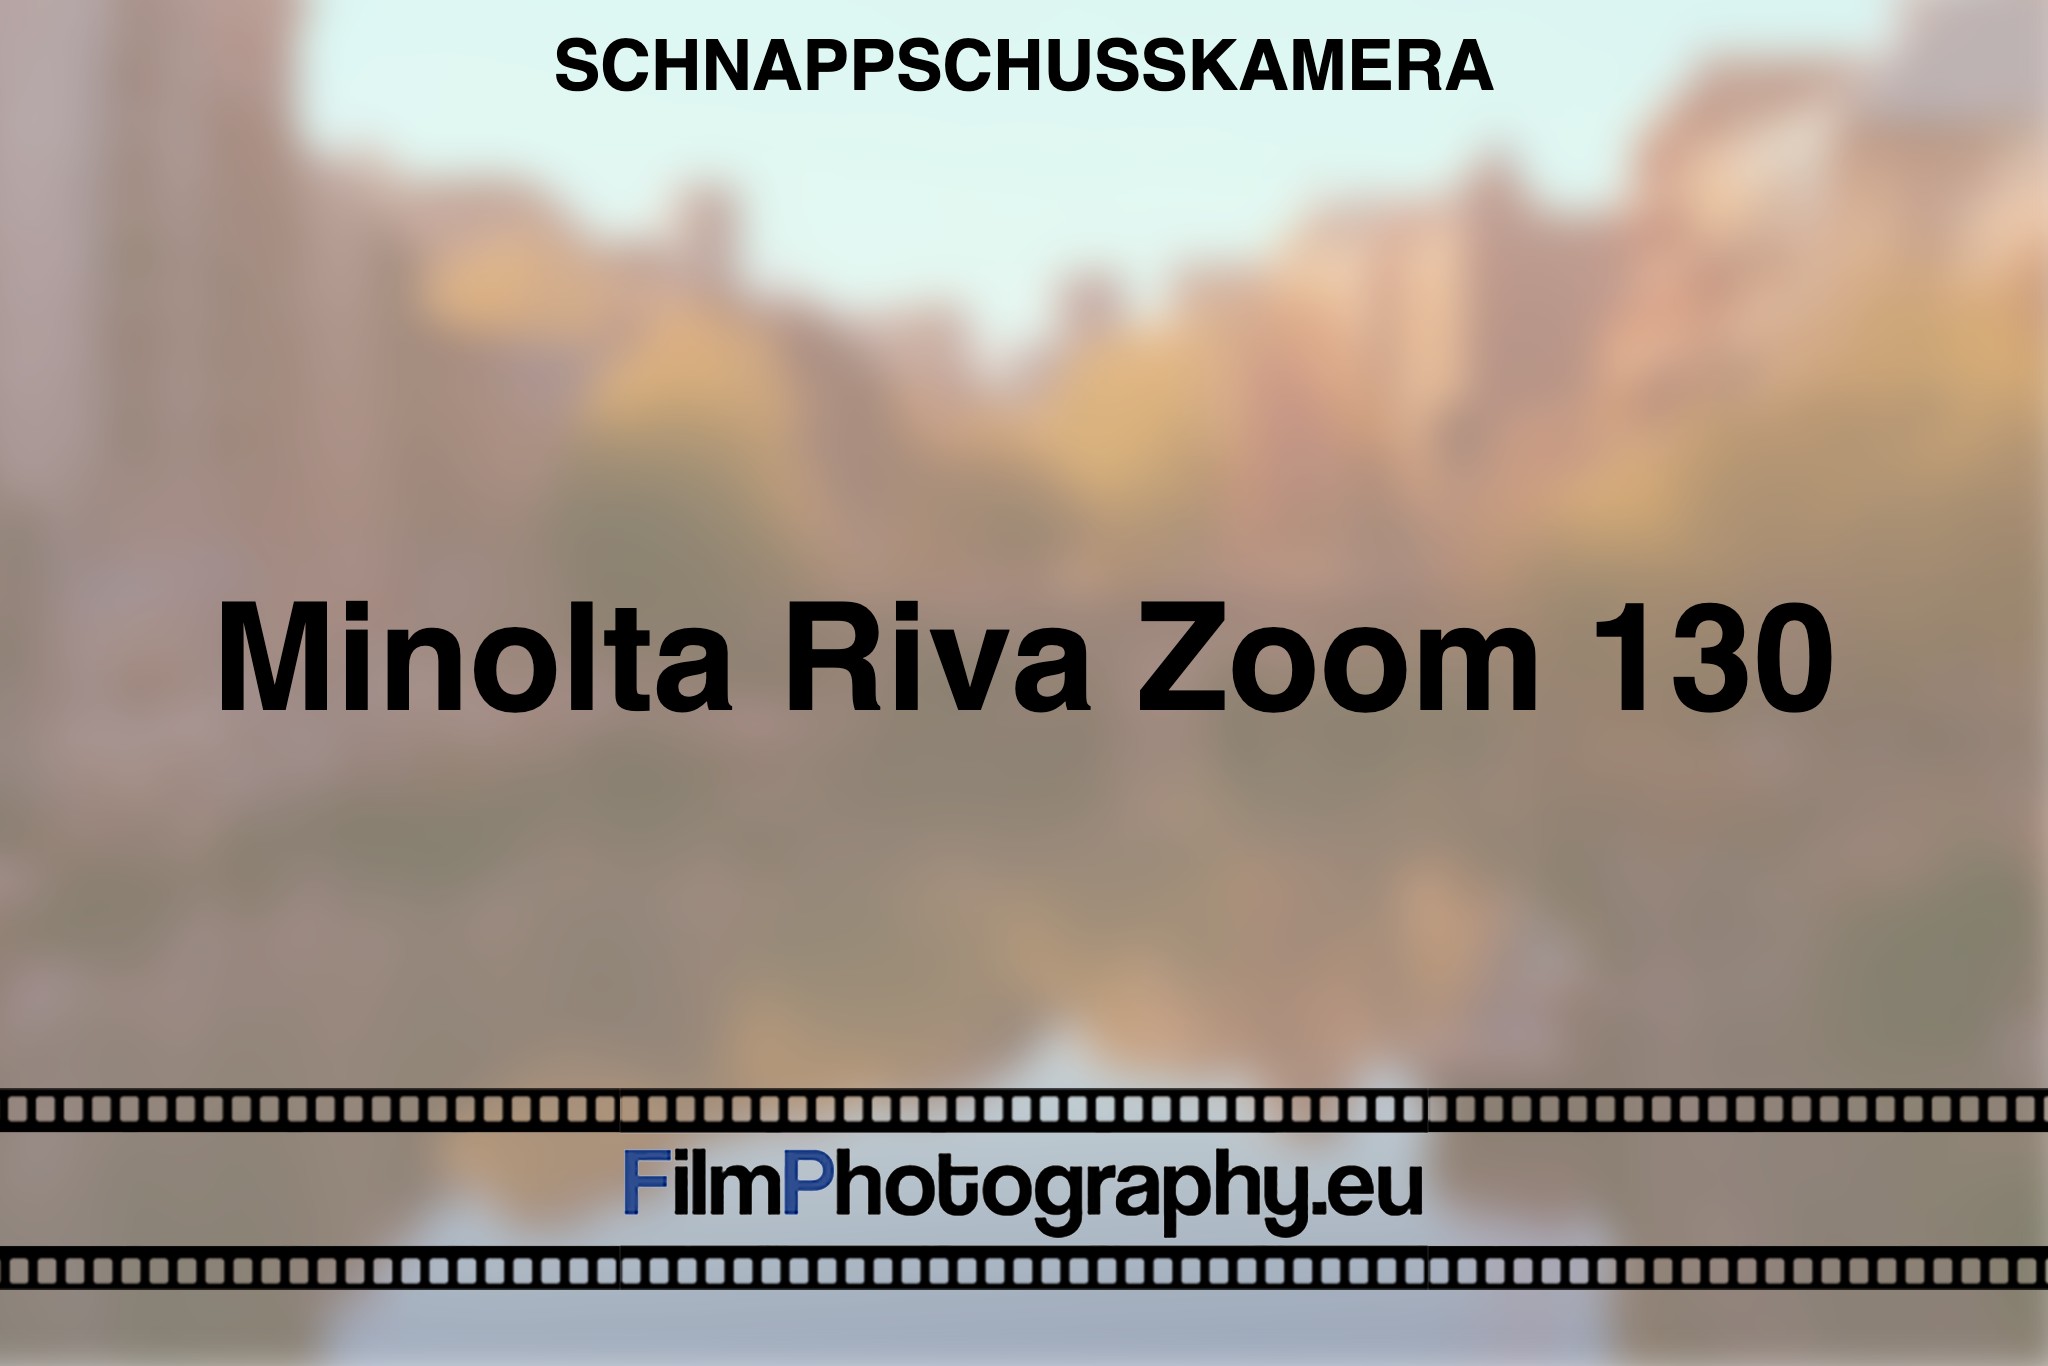 minolta-riva-zoom-130-schnappschusskamera-bnv